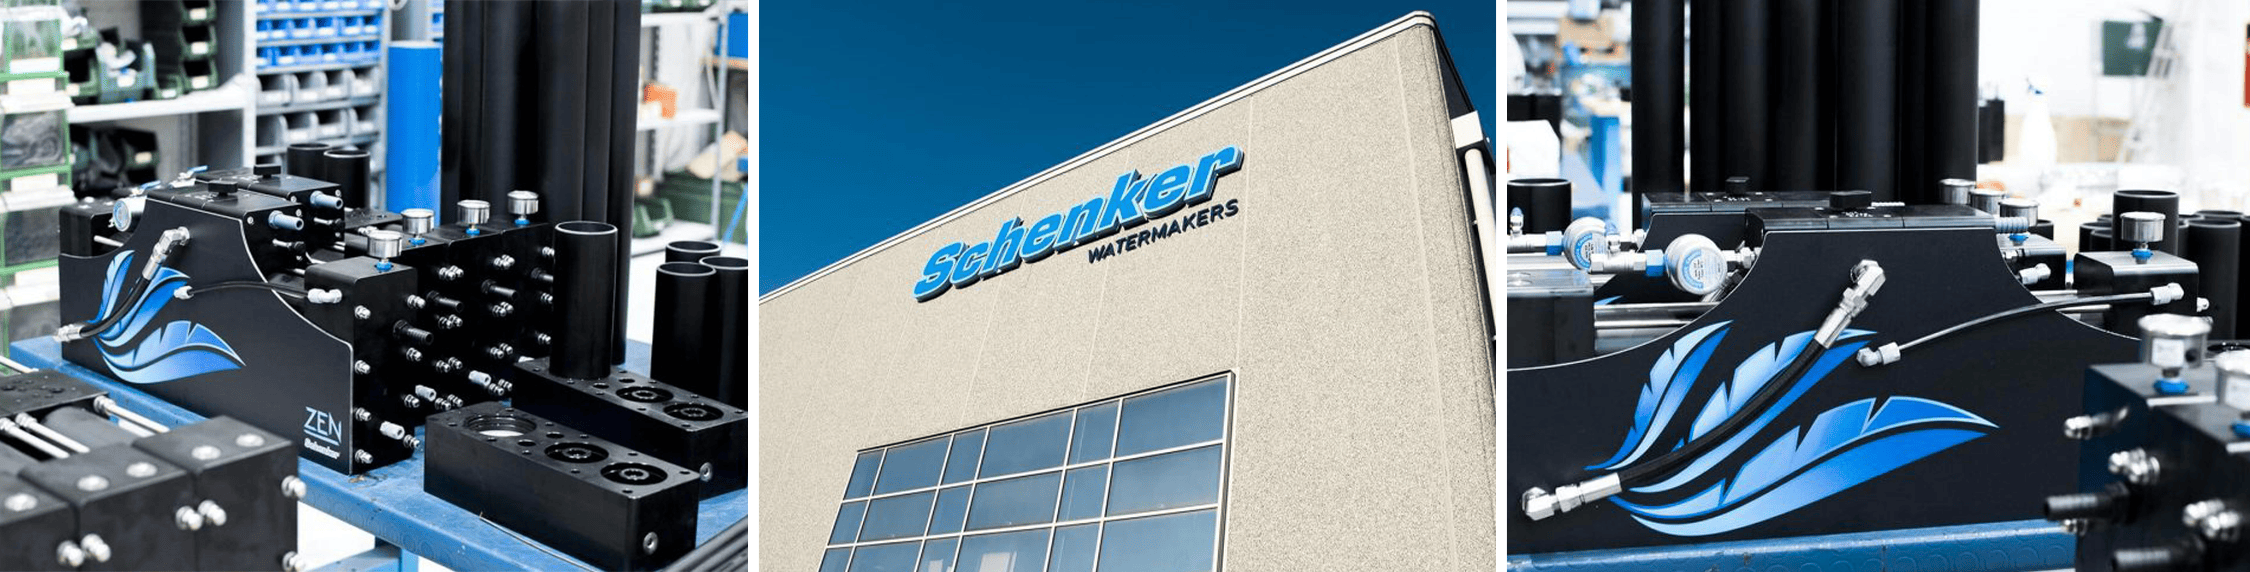 SCHENKER Watermakers | Schenker Marine Watermakers